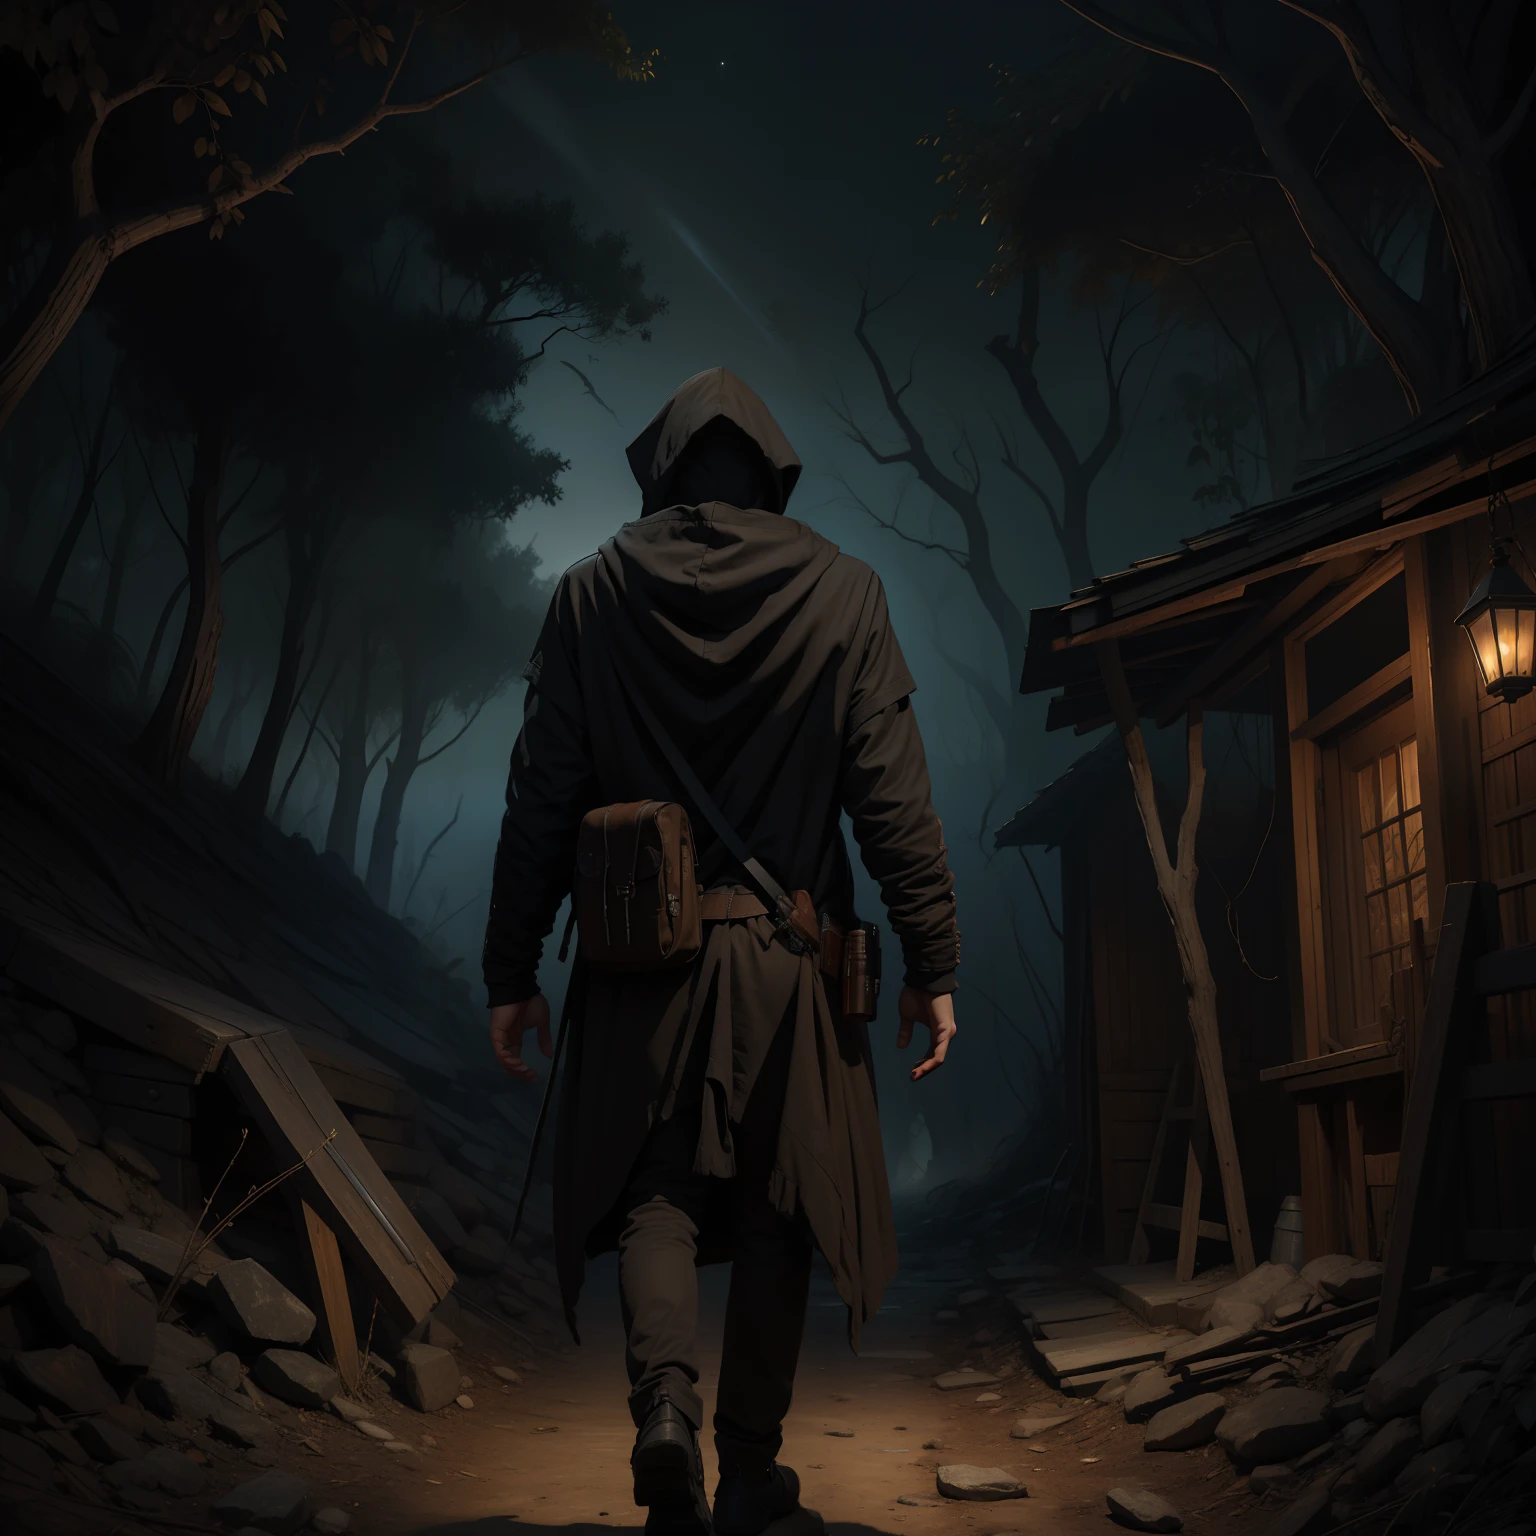 一名男子身穿连帽衫，手里拿着枪，走在干燥森林中的一条黑暗小路上。19 世纪的黑暗幻想画